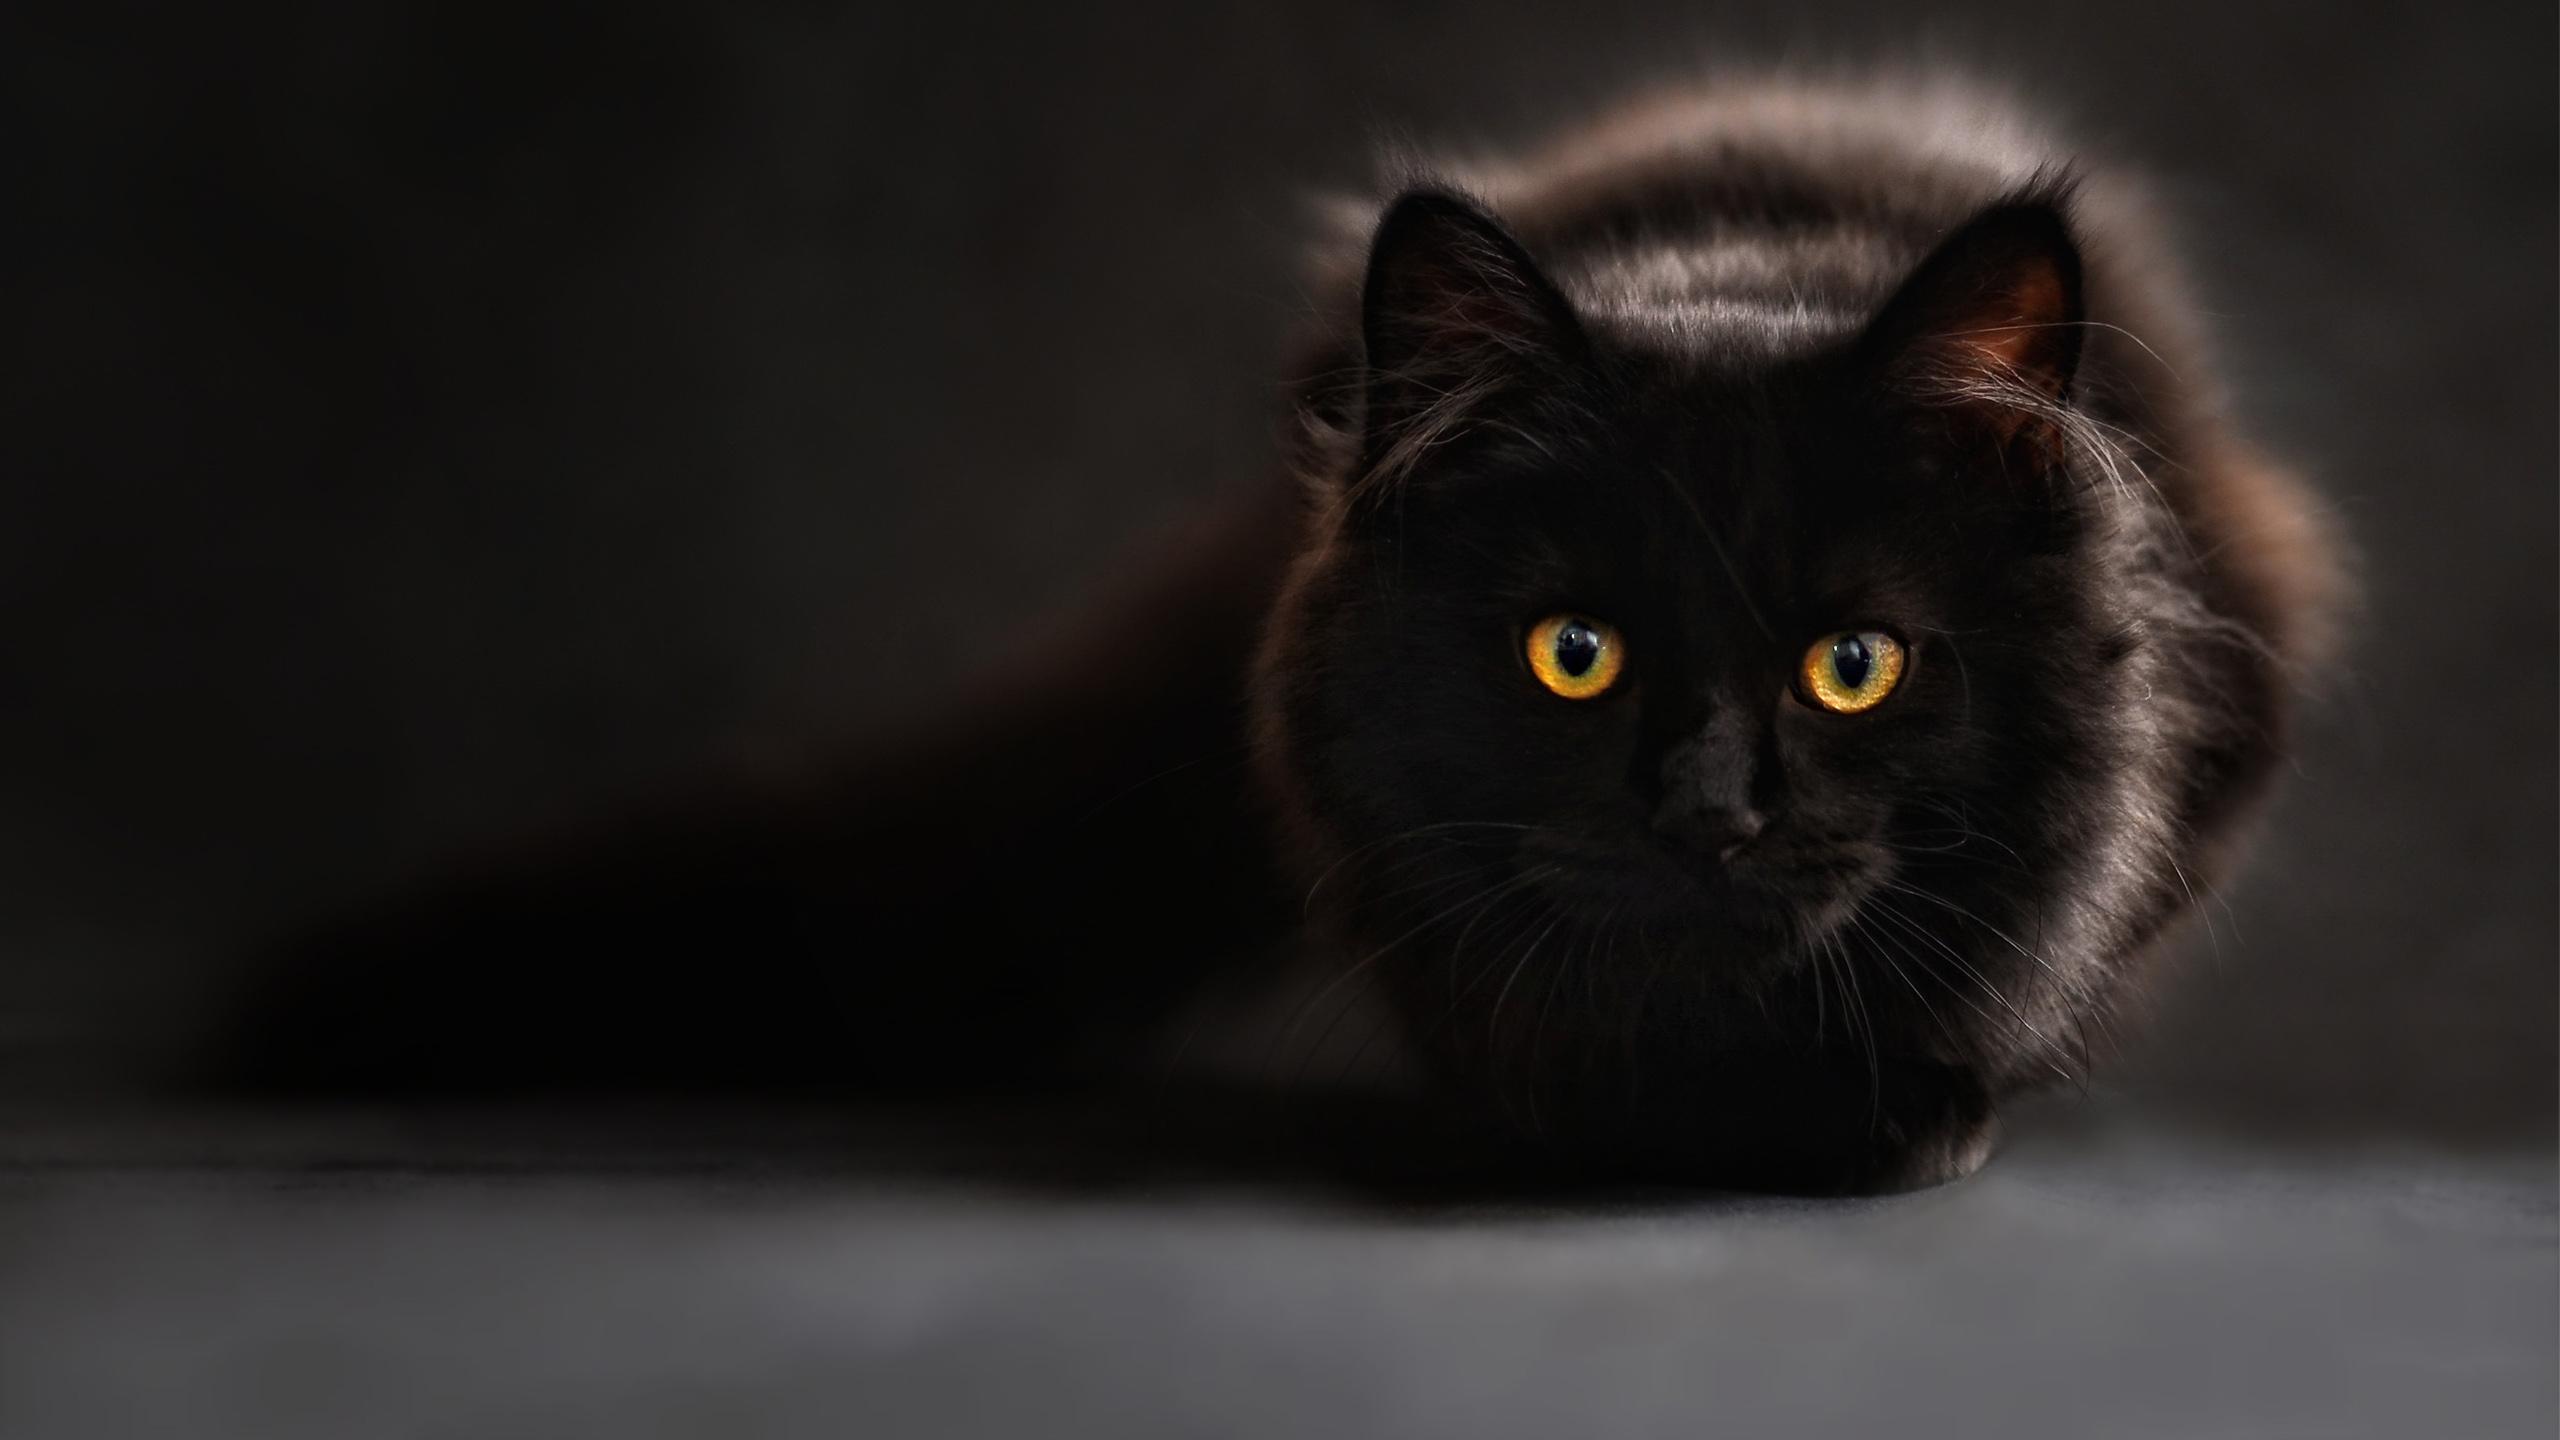 Download Gambar Hd Wallpapers Cute Black Cat terbaru 2020